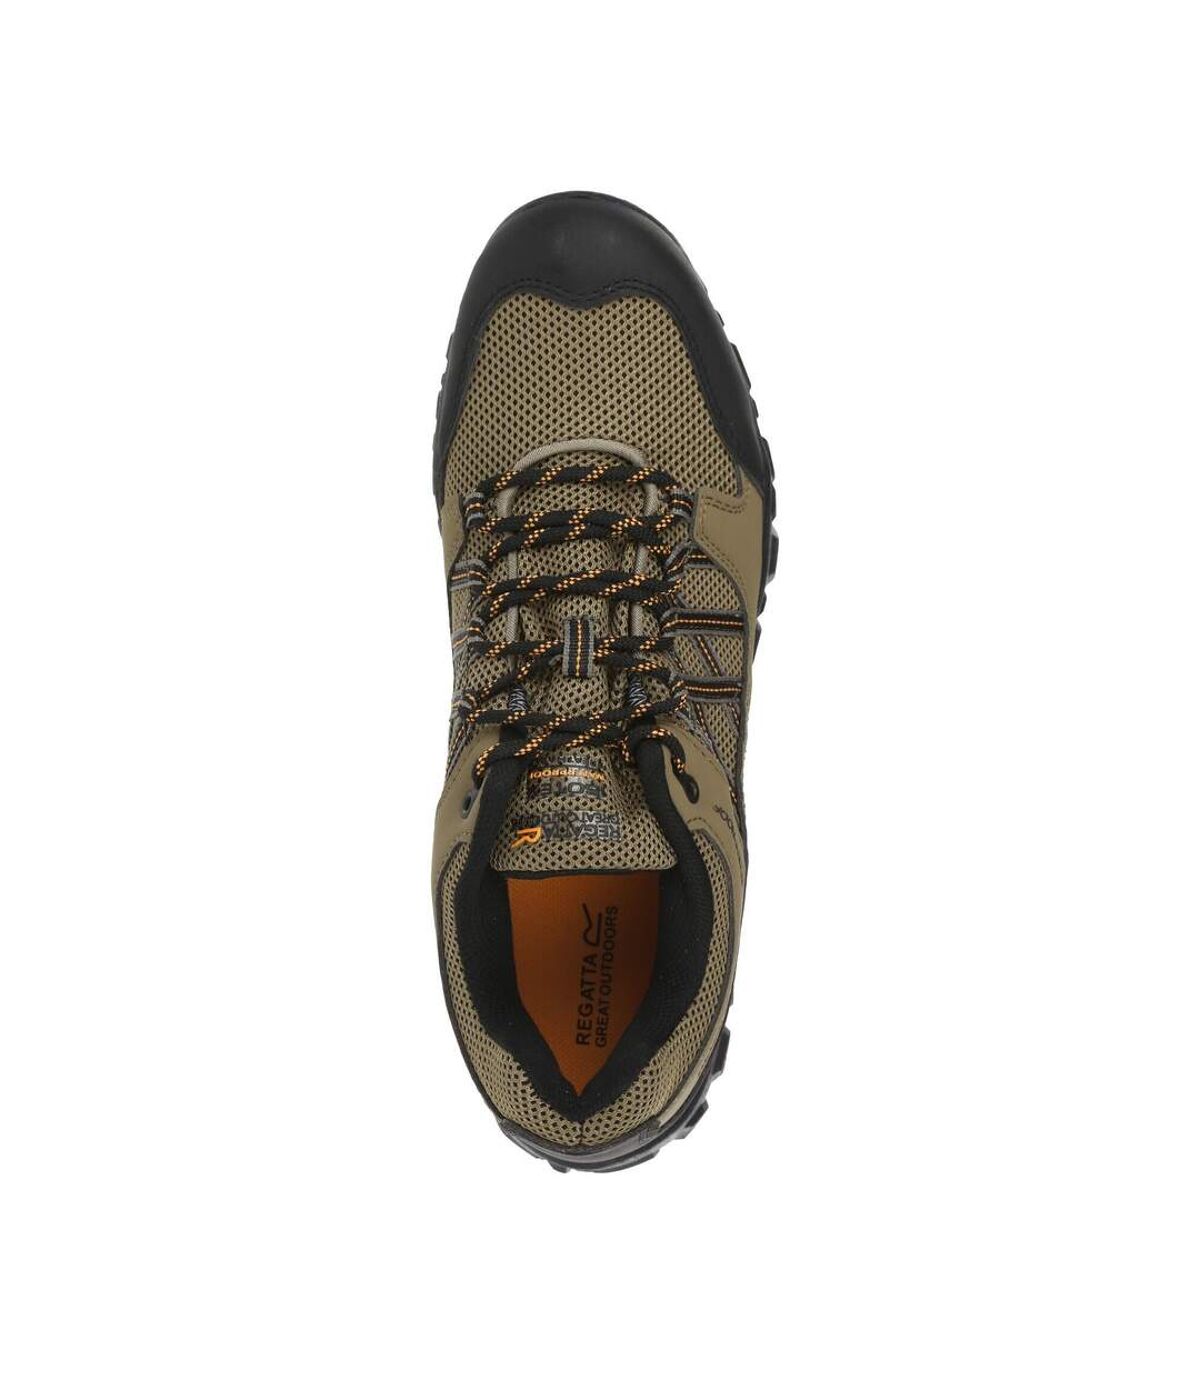 Regatta - Chaussures de randonnée EDGEPOINT - Homme (Beige foncé / Orange) - UTRG4168